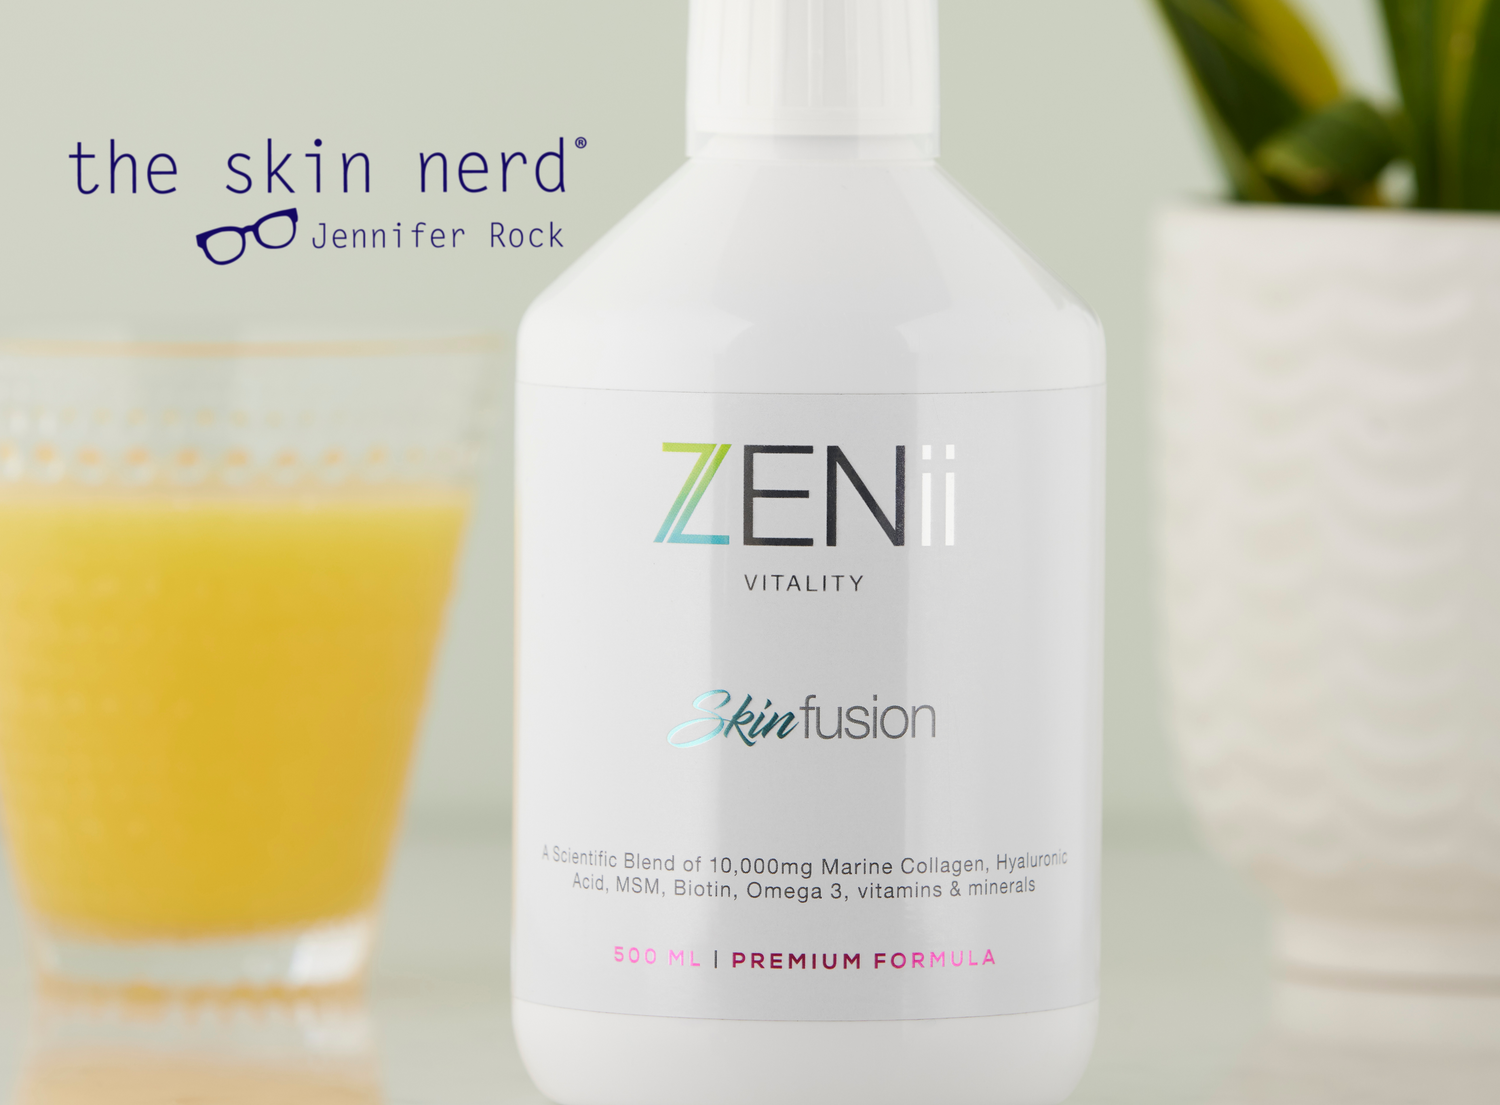 ZENii Fusion - Featured in The Skin Nerd